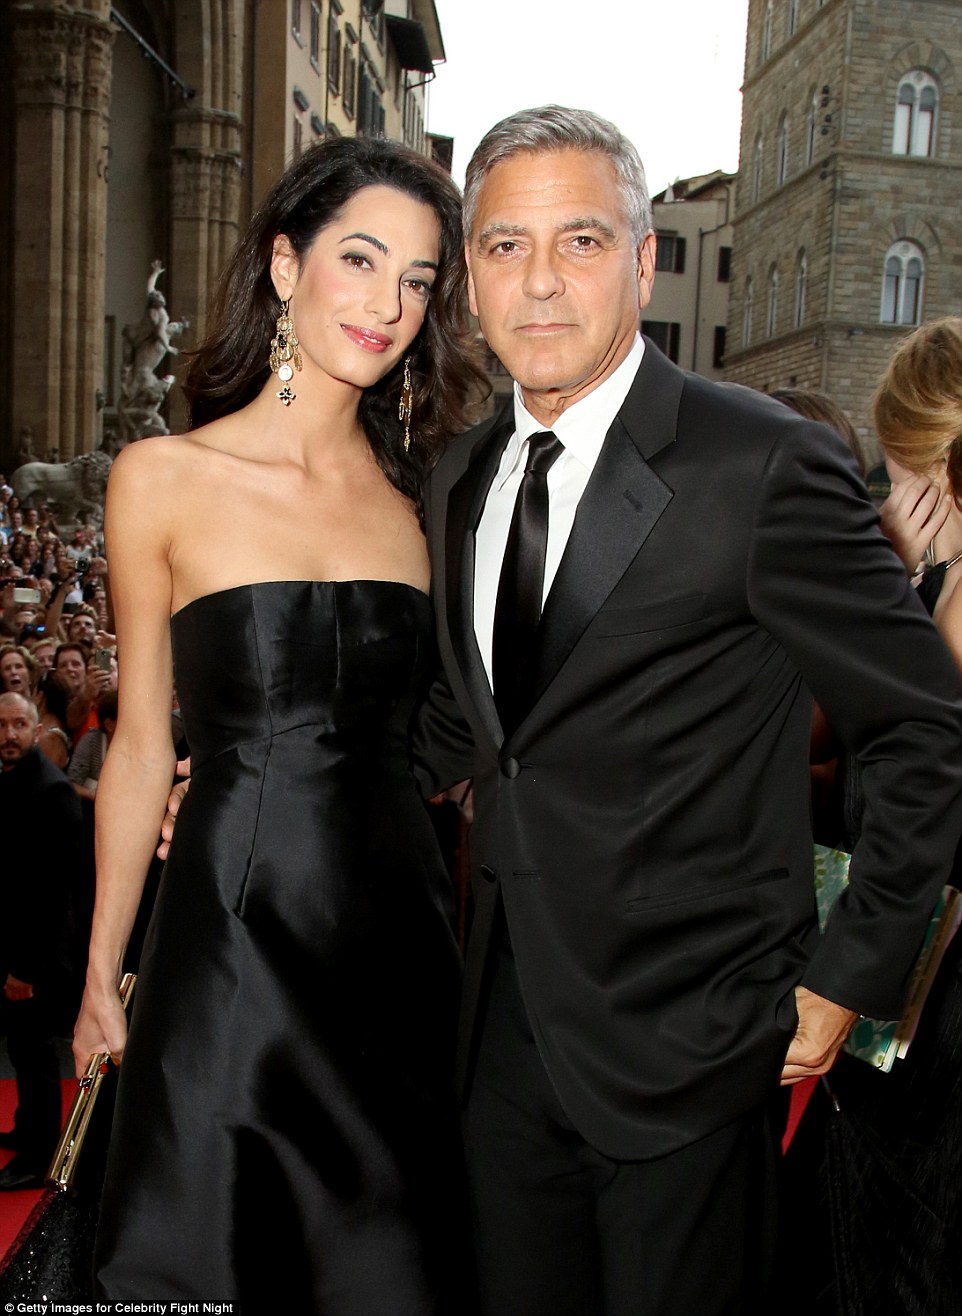 George Clooney esküvőjének varázslatos helyszínei Velencében 